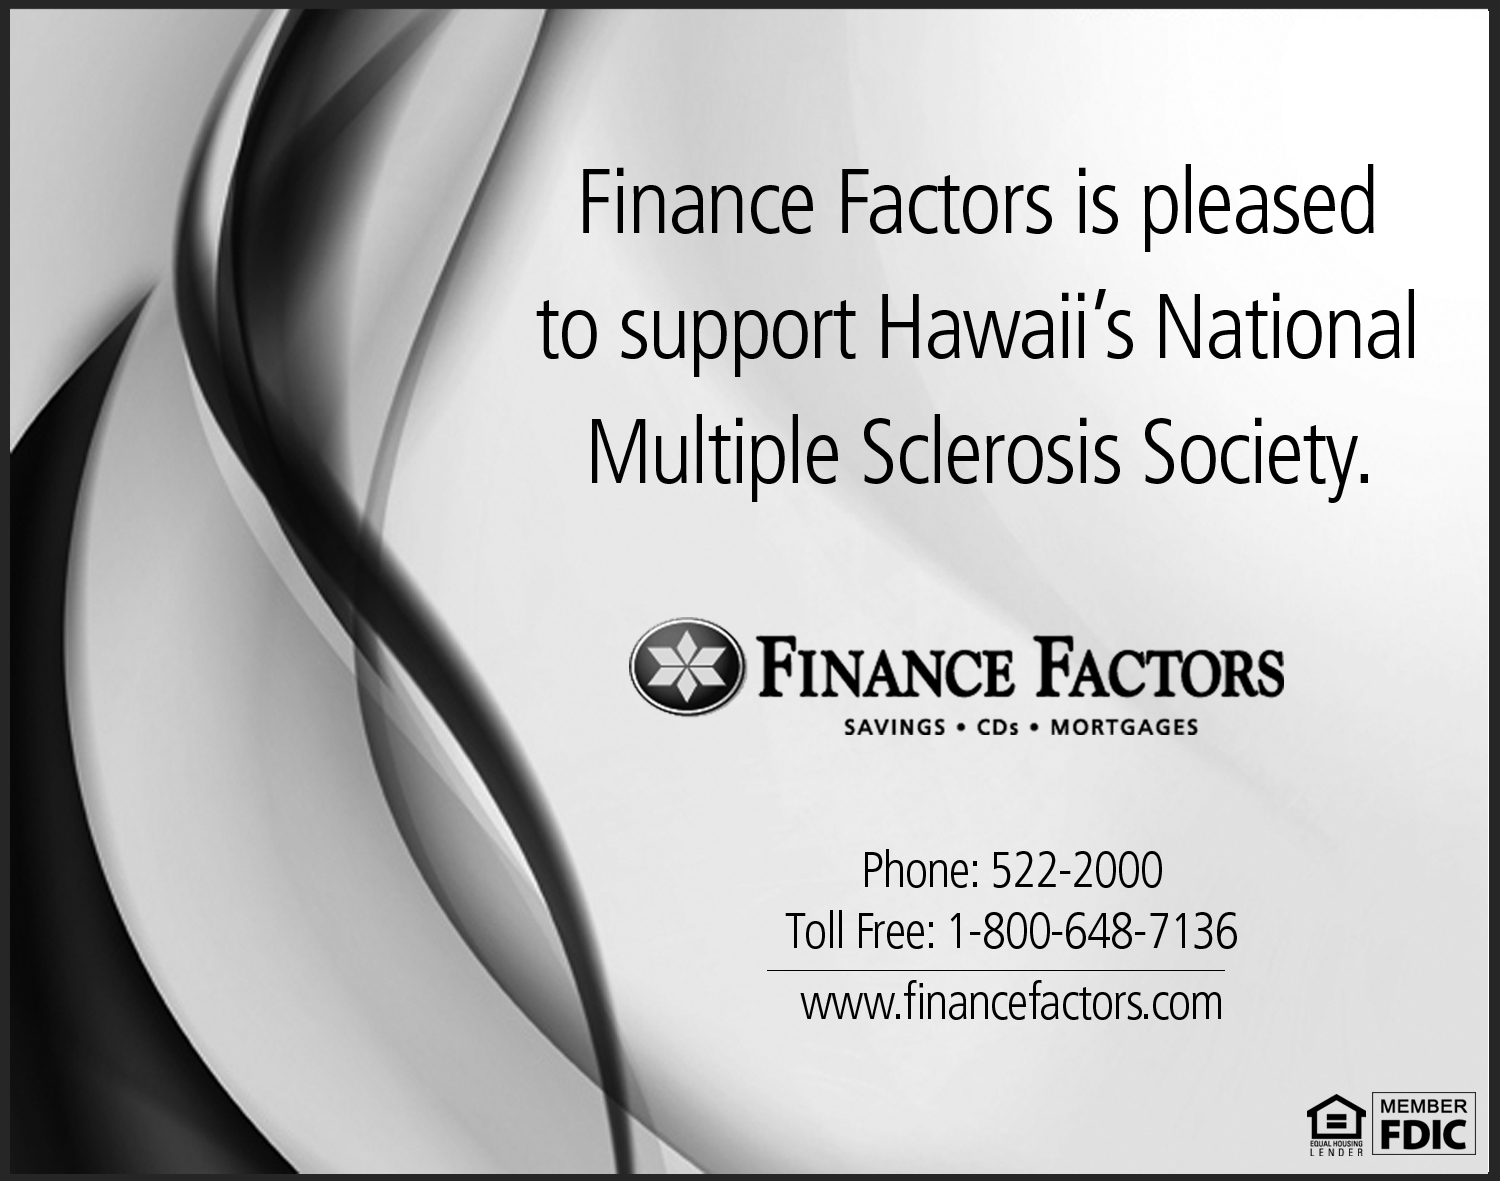 Finance Factors